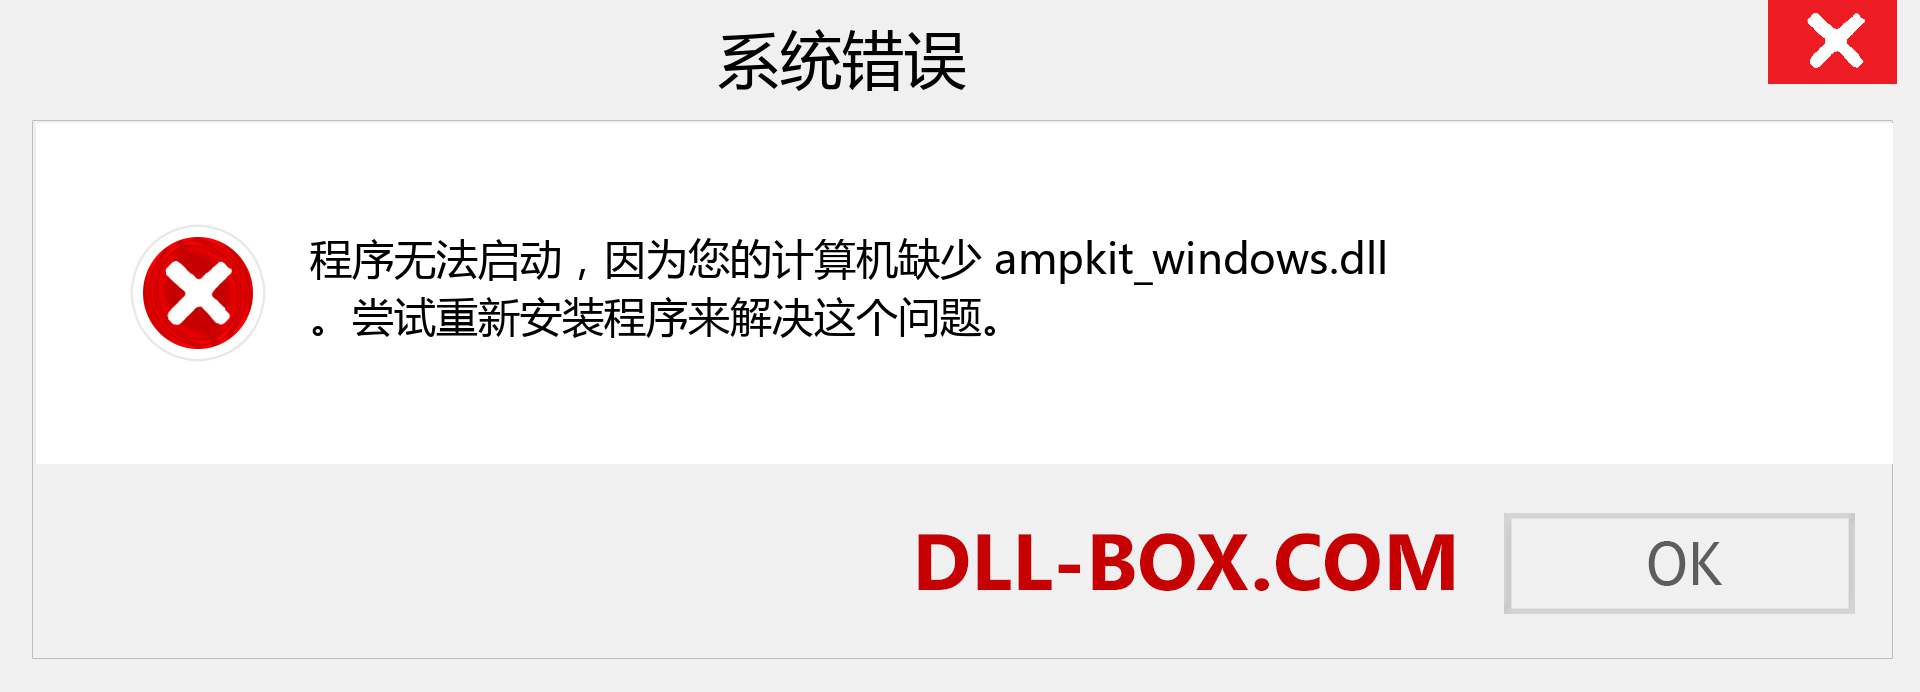 ampkit_windows.dll 文件丢失？。 适用于 Windows 7、8、10 的下载 - 修复 Windows、照片、图像上的 ampkit_windows dll 丢失错误